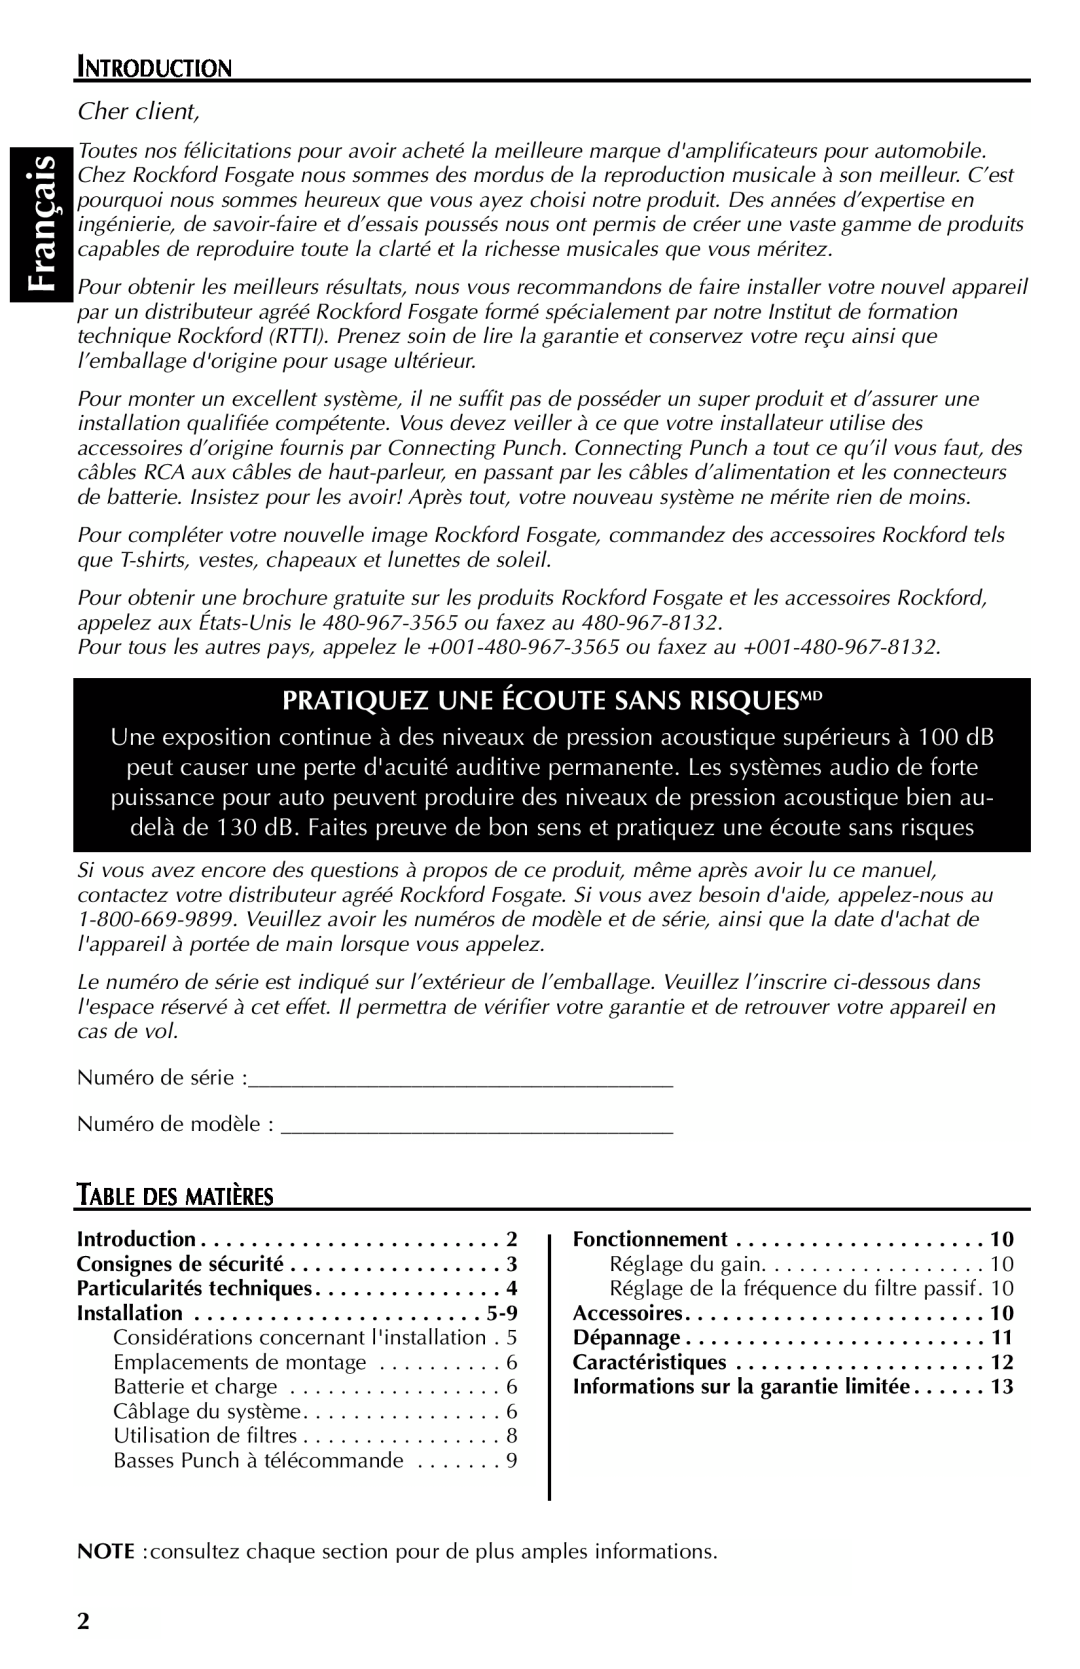 Rockford Fosgate 301SP, 401SP Français, Pratiquez Une Écoute Sans Risquesmd, Introduction, Cher client, Table Des Matières 